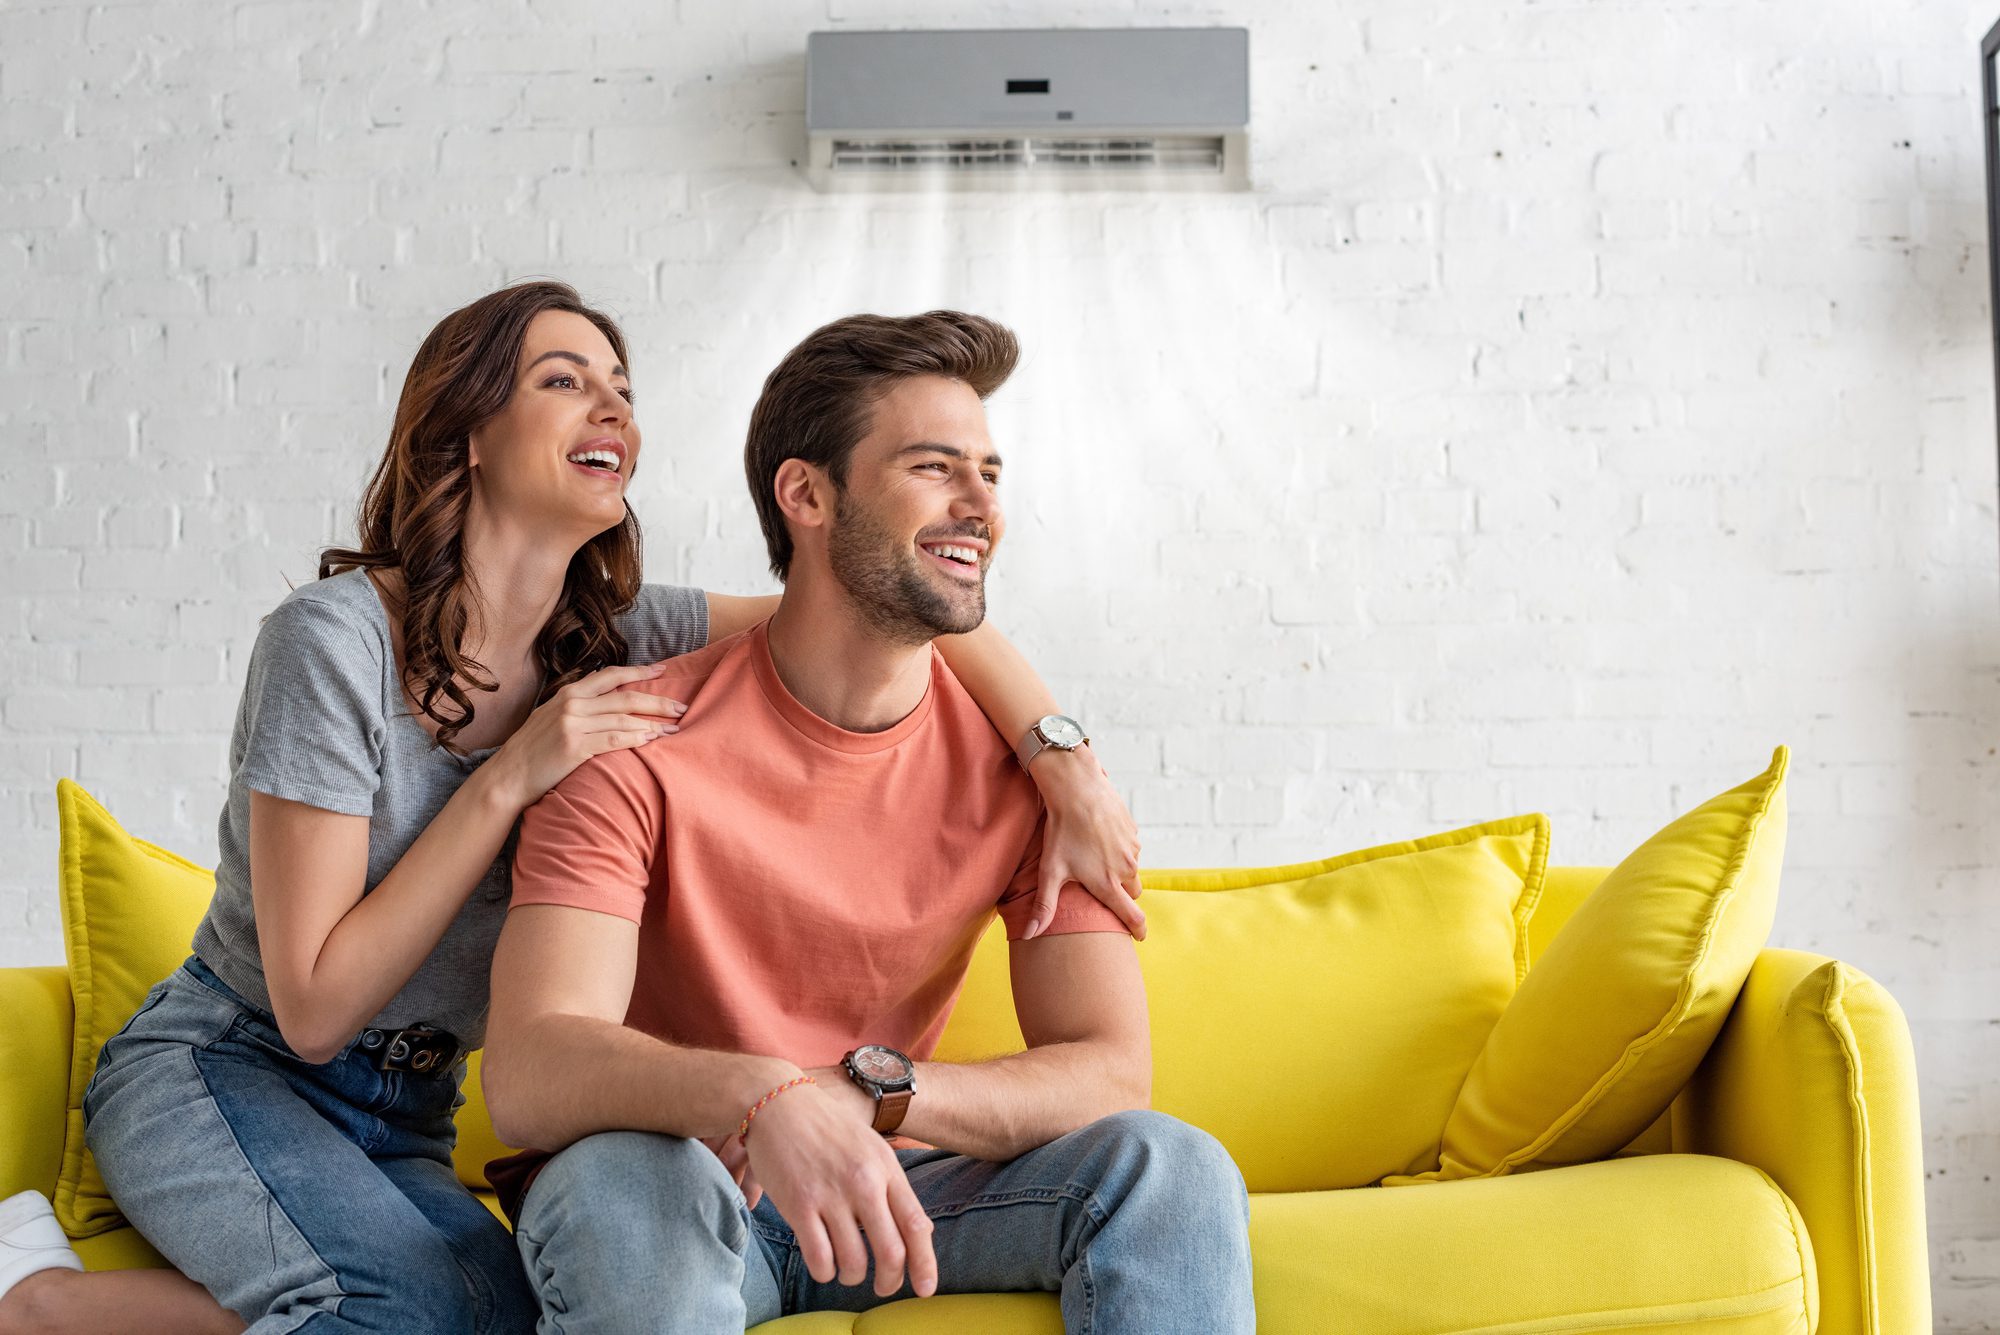 

New
Borrar fondo

Guardar

Compartir

Muestra

Alegre pareja sentado en amarillo sofá bajo el aire acondicionado en casa